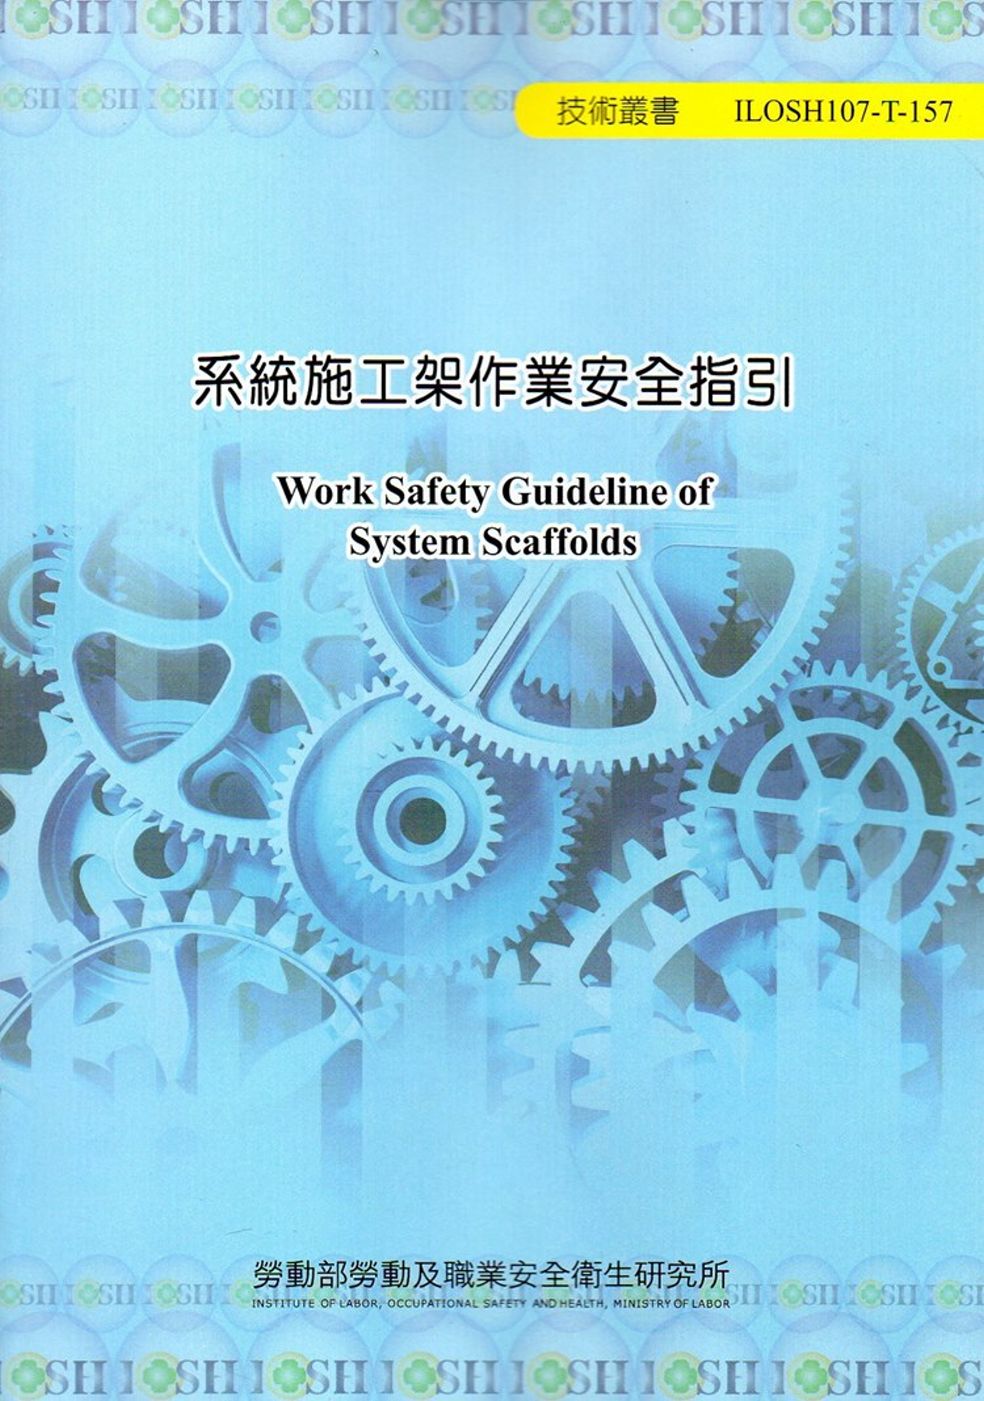 系統施工架作業安全指引 ILOSH107-T-157